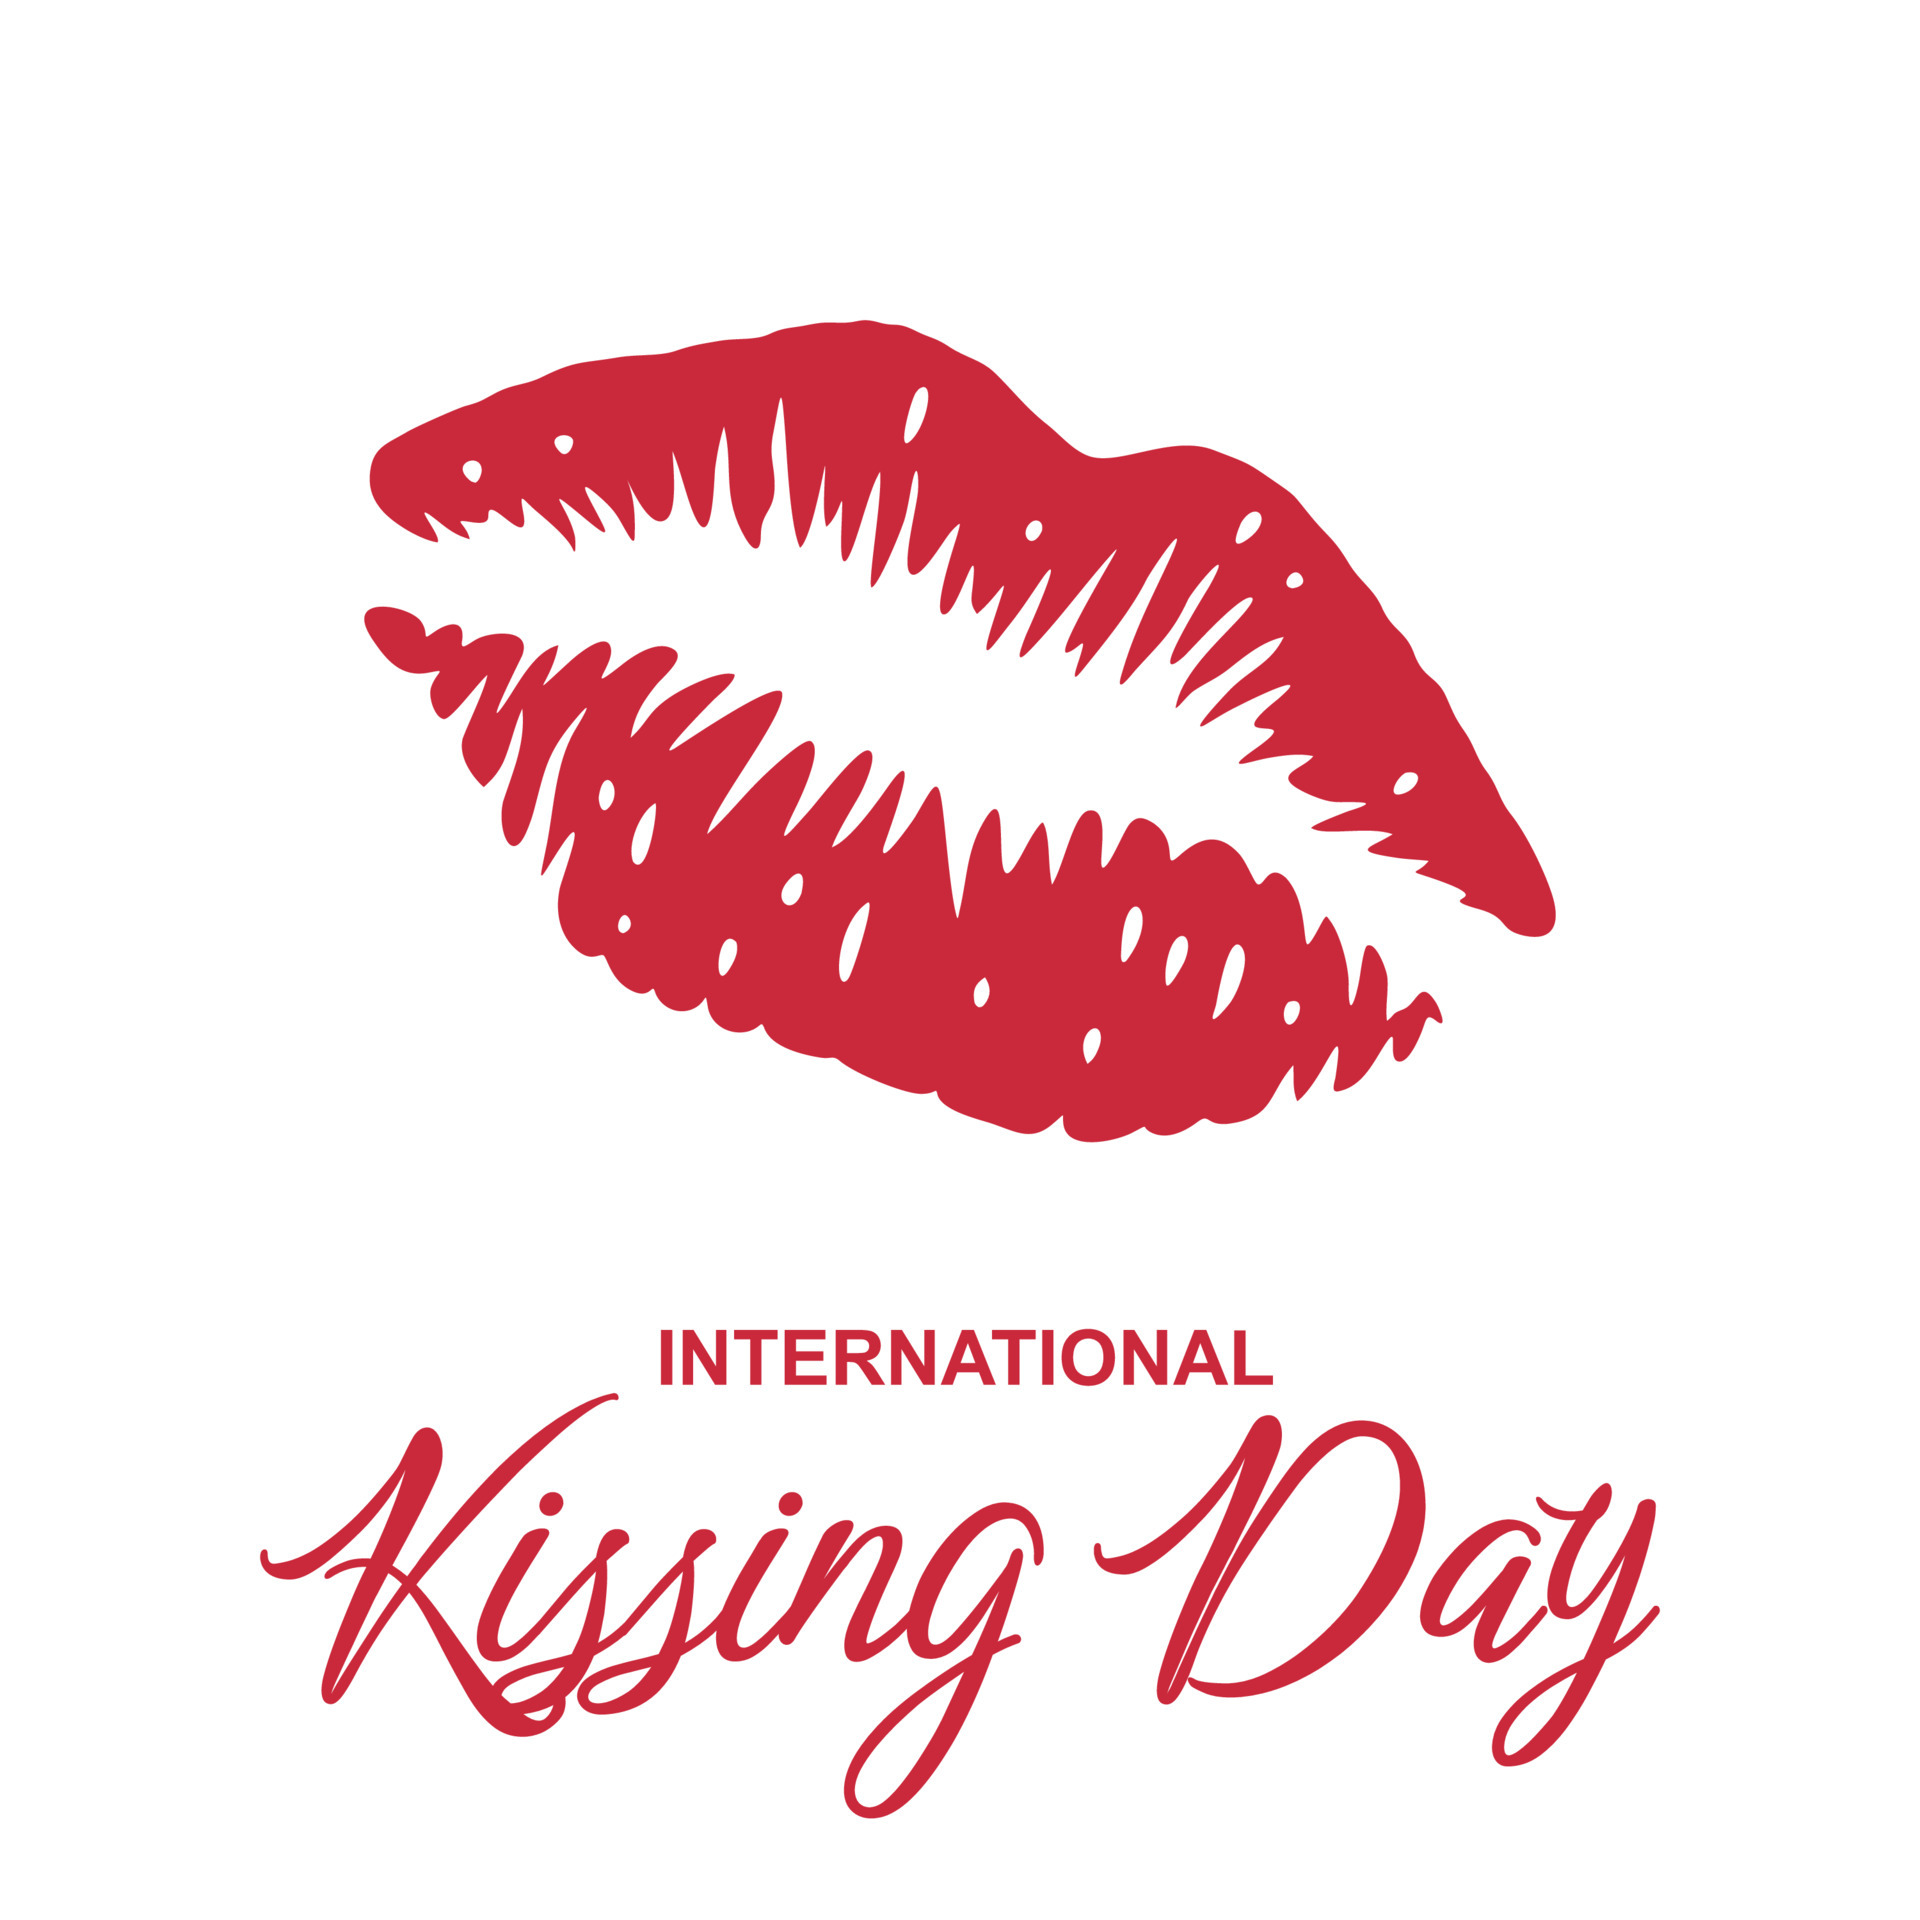 National Kissing Day Theme Kanya Marcella